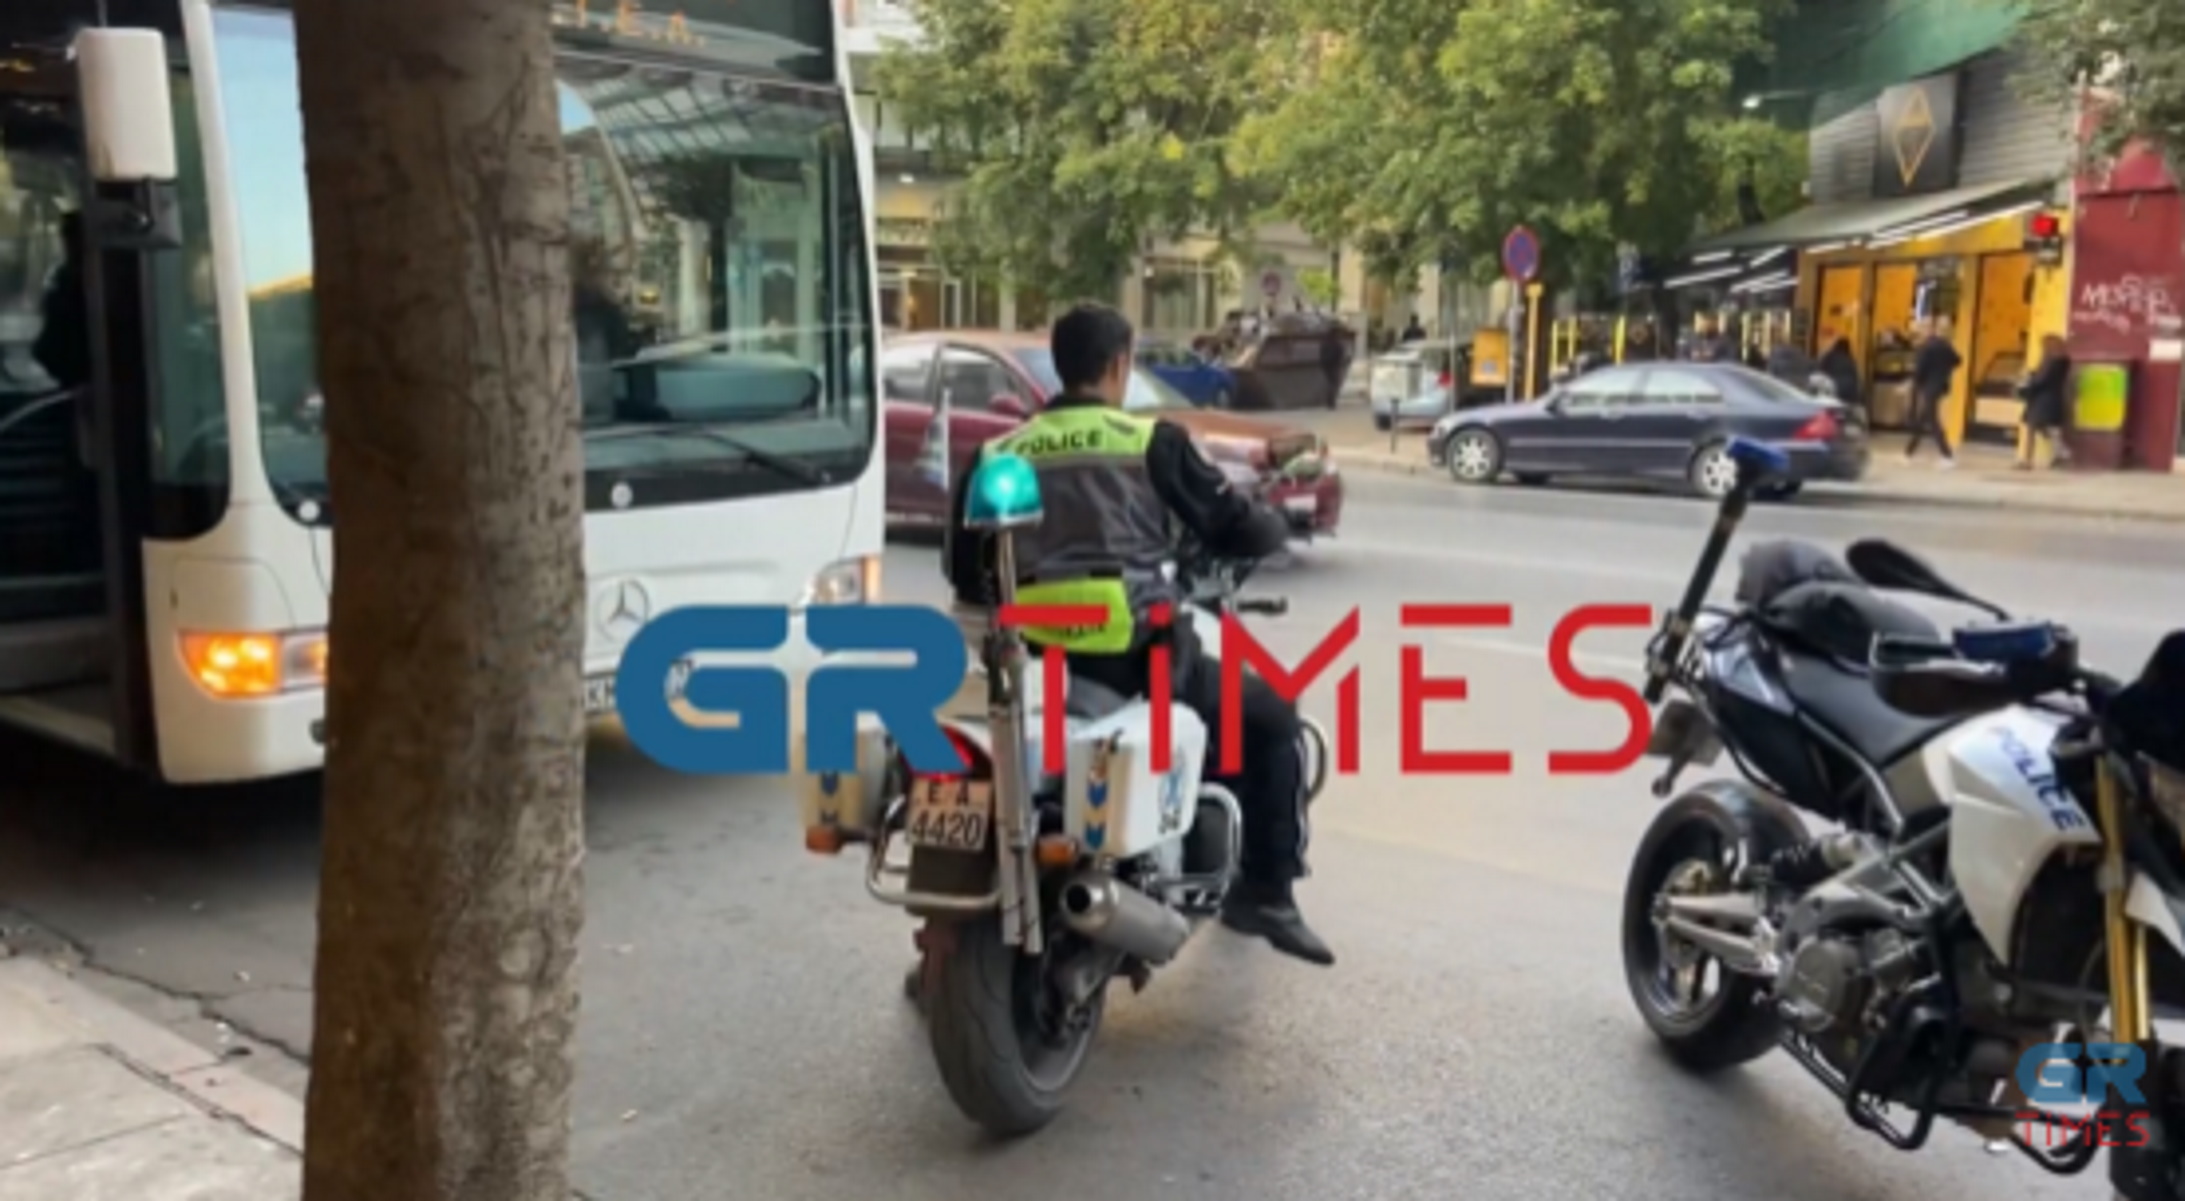 Θεσσαλονίκη: Χτύπησε μητέρα με παιδί στην αγκαλιά – Σοκαριστικές σκηνές σε αστικό λεωφορείο